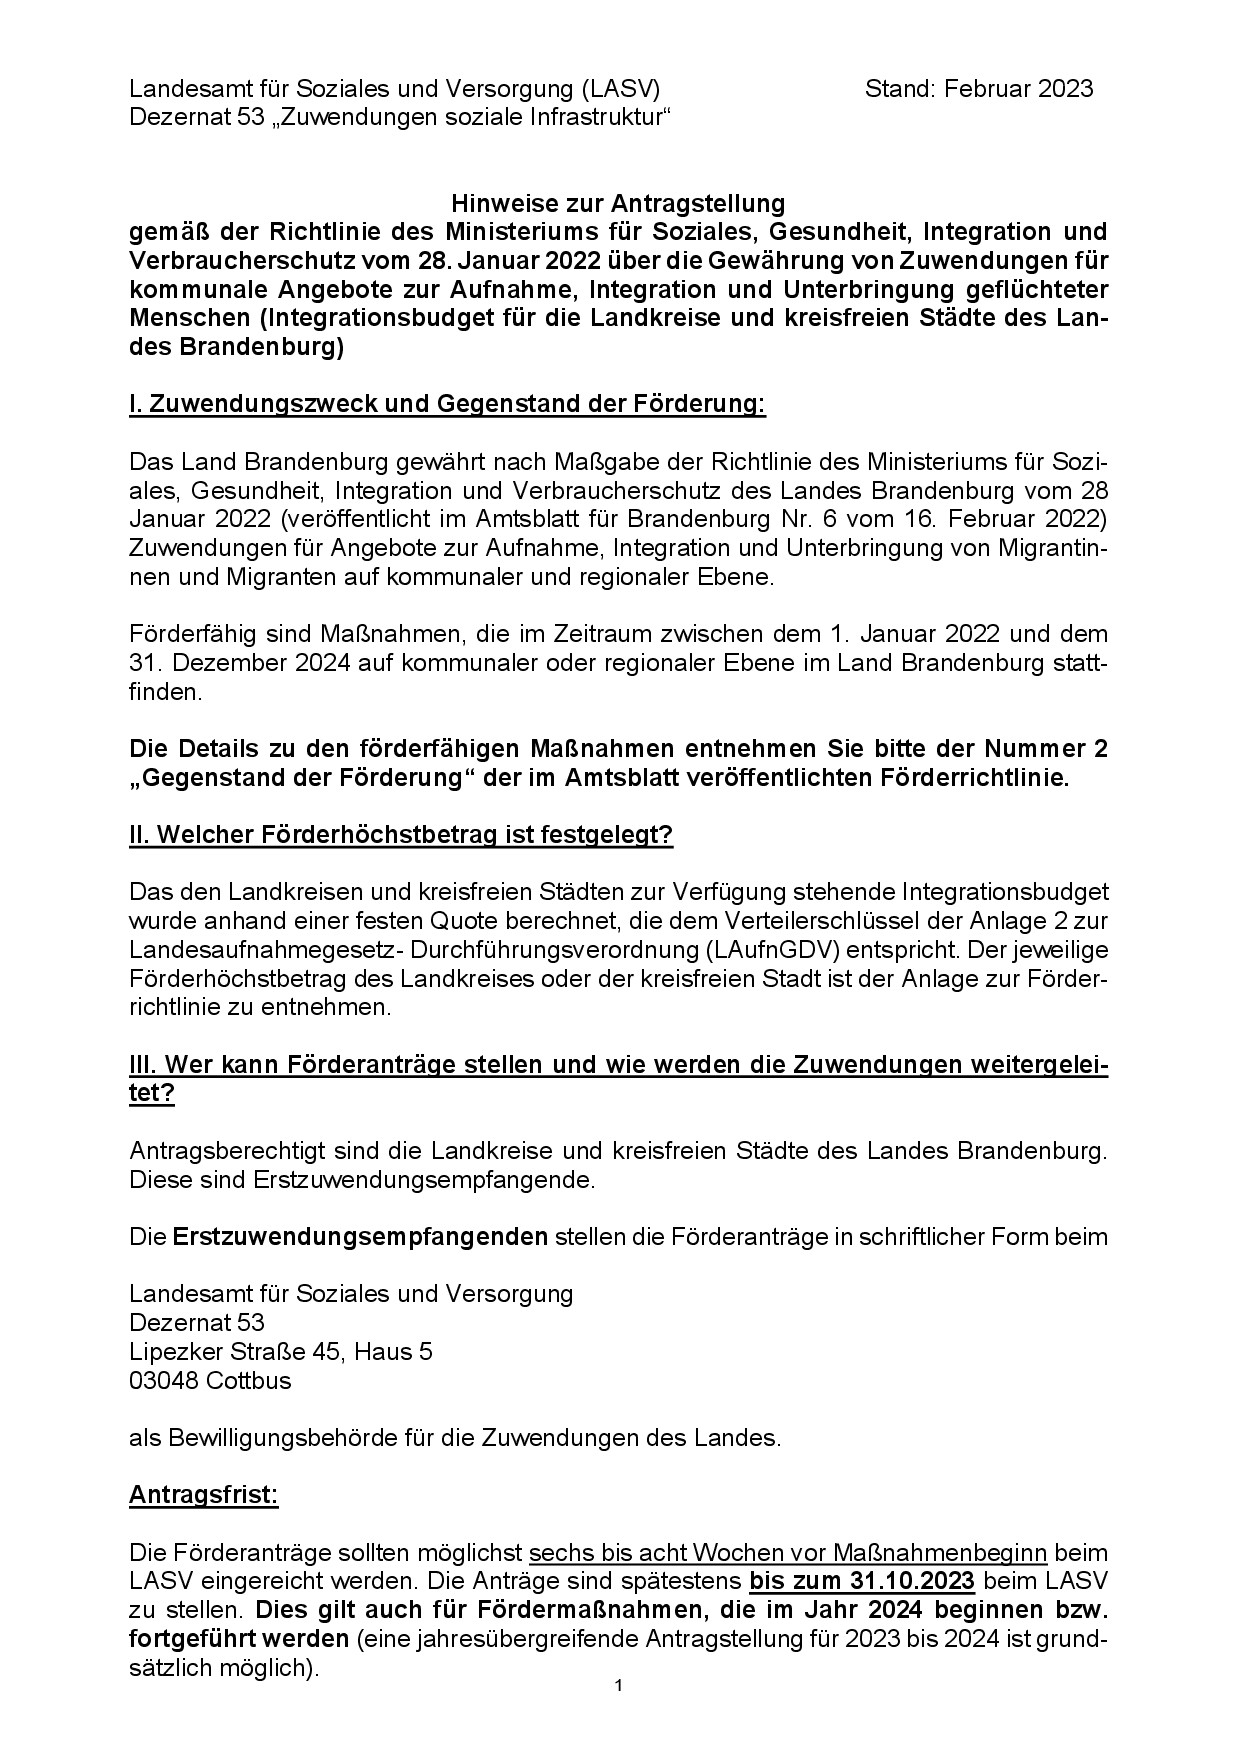 Bild vergrößern (Bild: Hinweise zur Antragstellung - Integrationsbudget für die Landkreise und kreisfreien Städte des Landes Brandenburg-001.jpg)